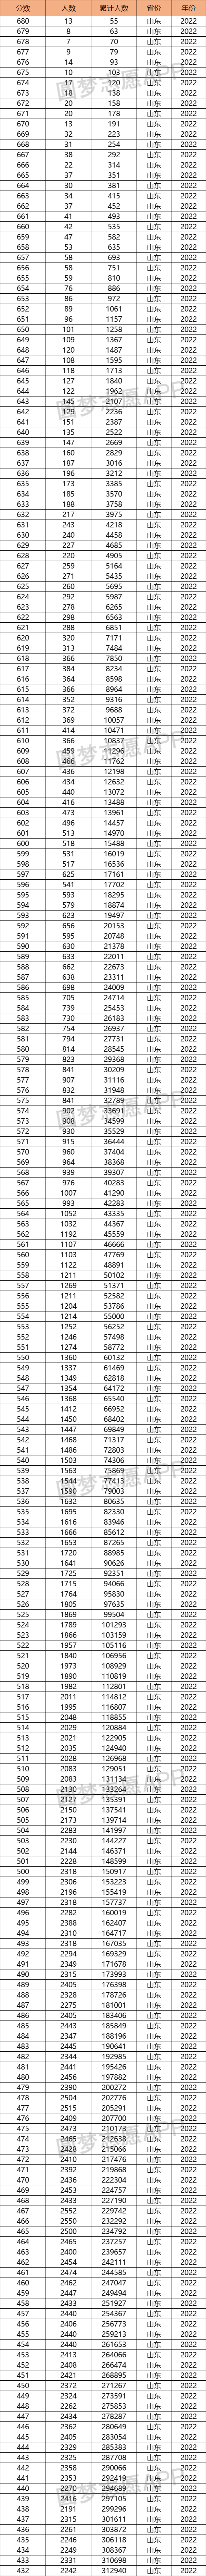 2022山东高考一分一段排名表-山东高考位次表2022